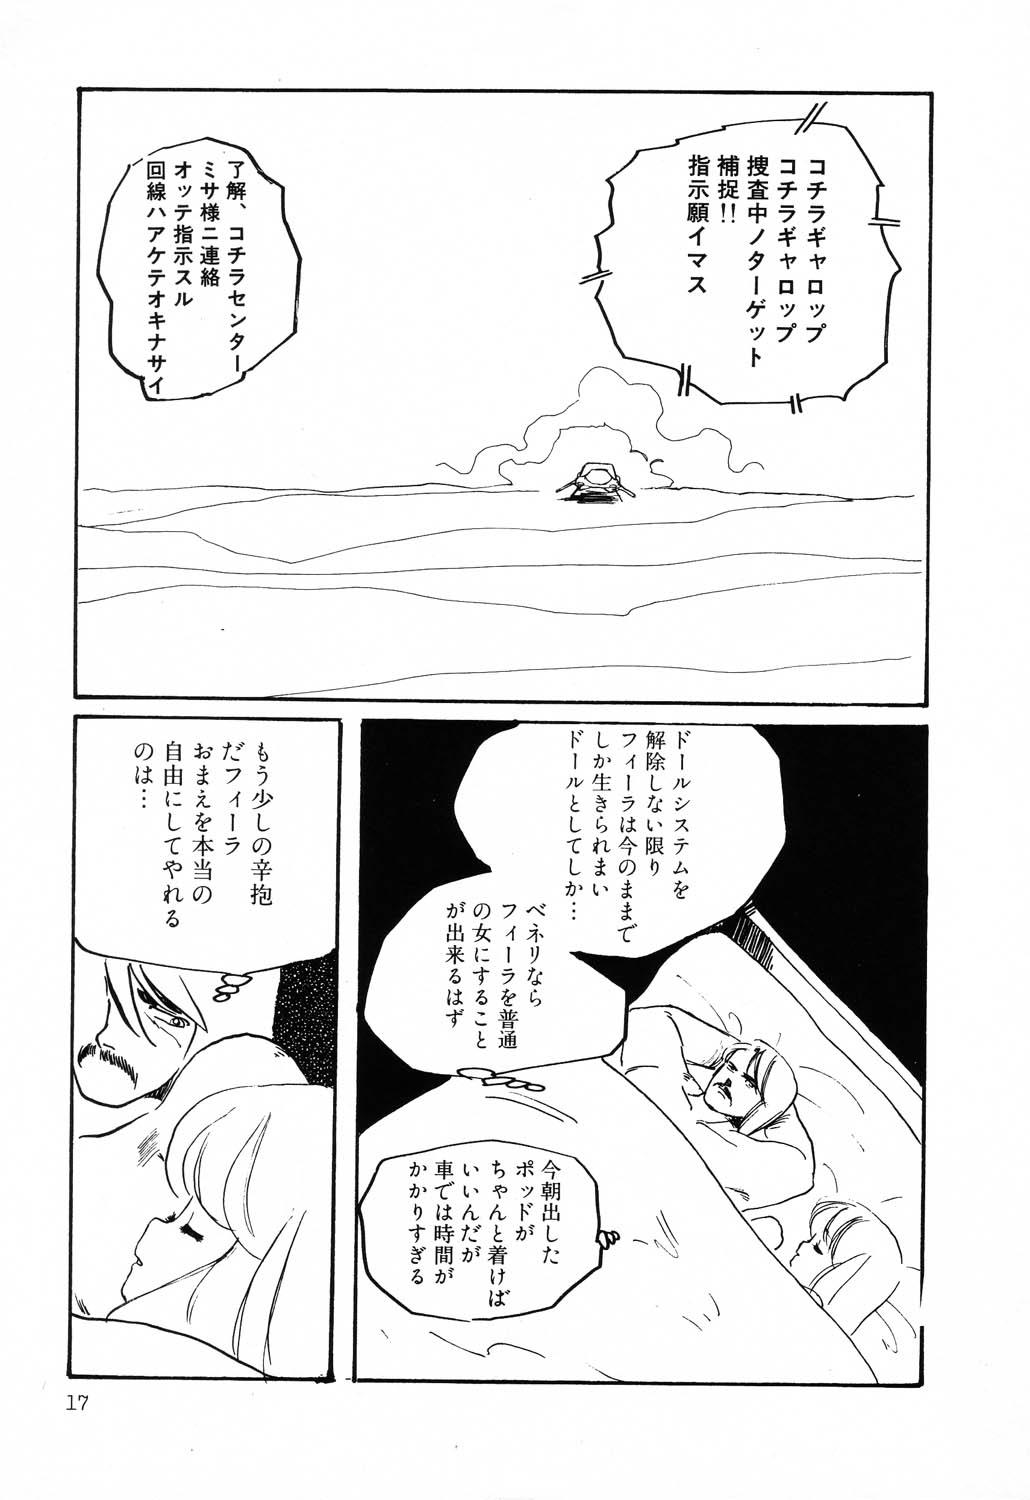 PAGE1 NO. 2 16